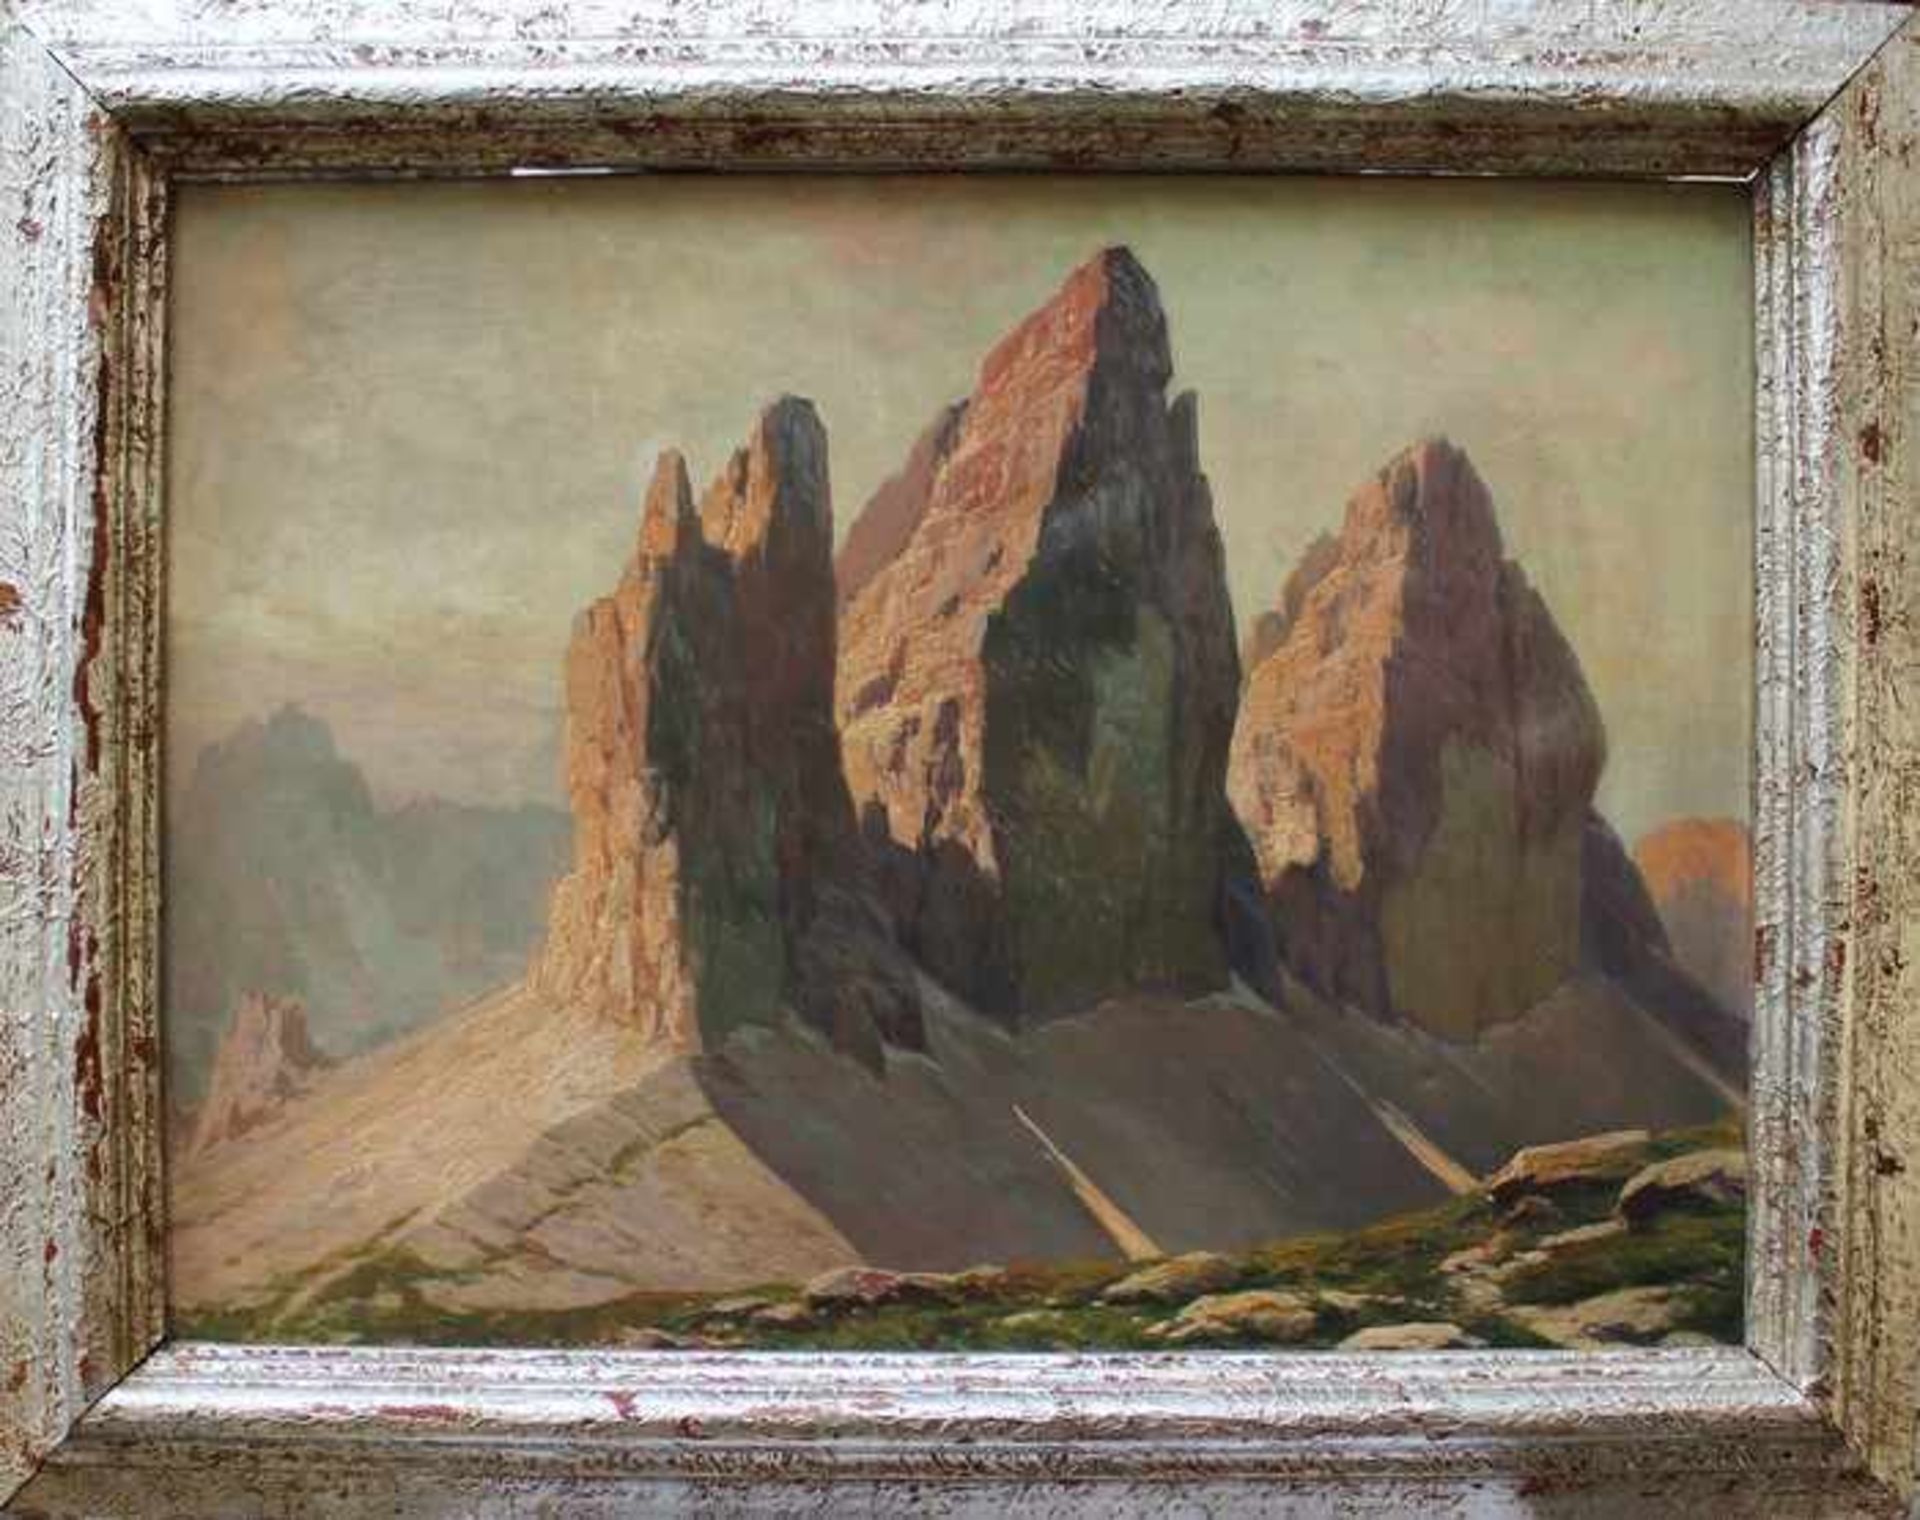 Benesch, K.1.H.20.Jh., österreichischer Maler, "Die drei Zinnen", Öl/Lwd., pastelltonige